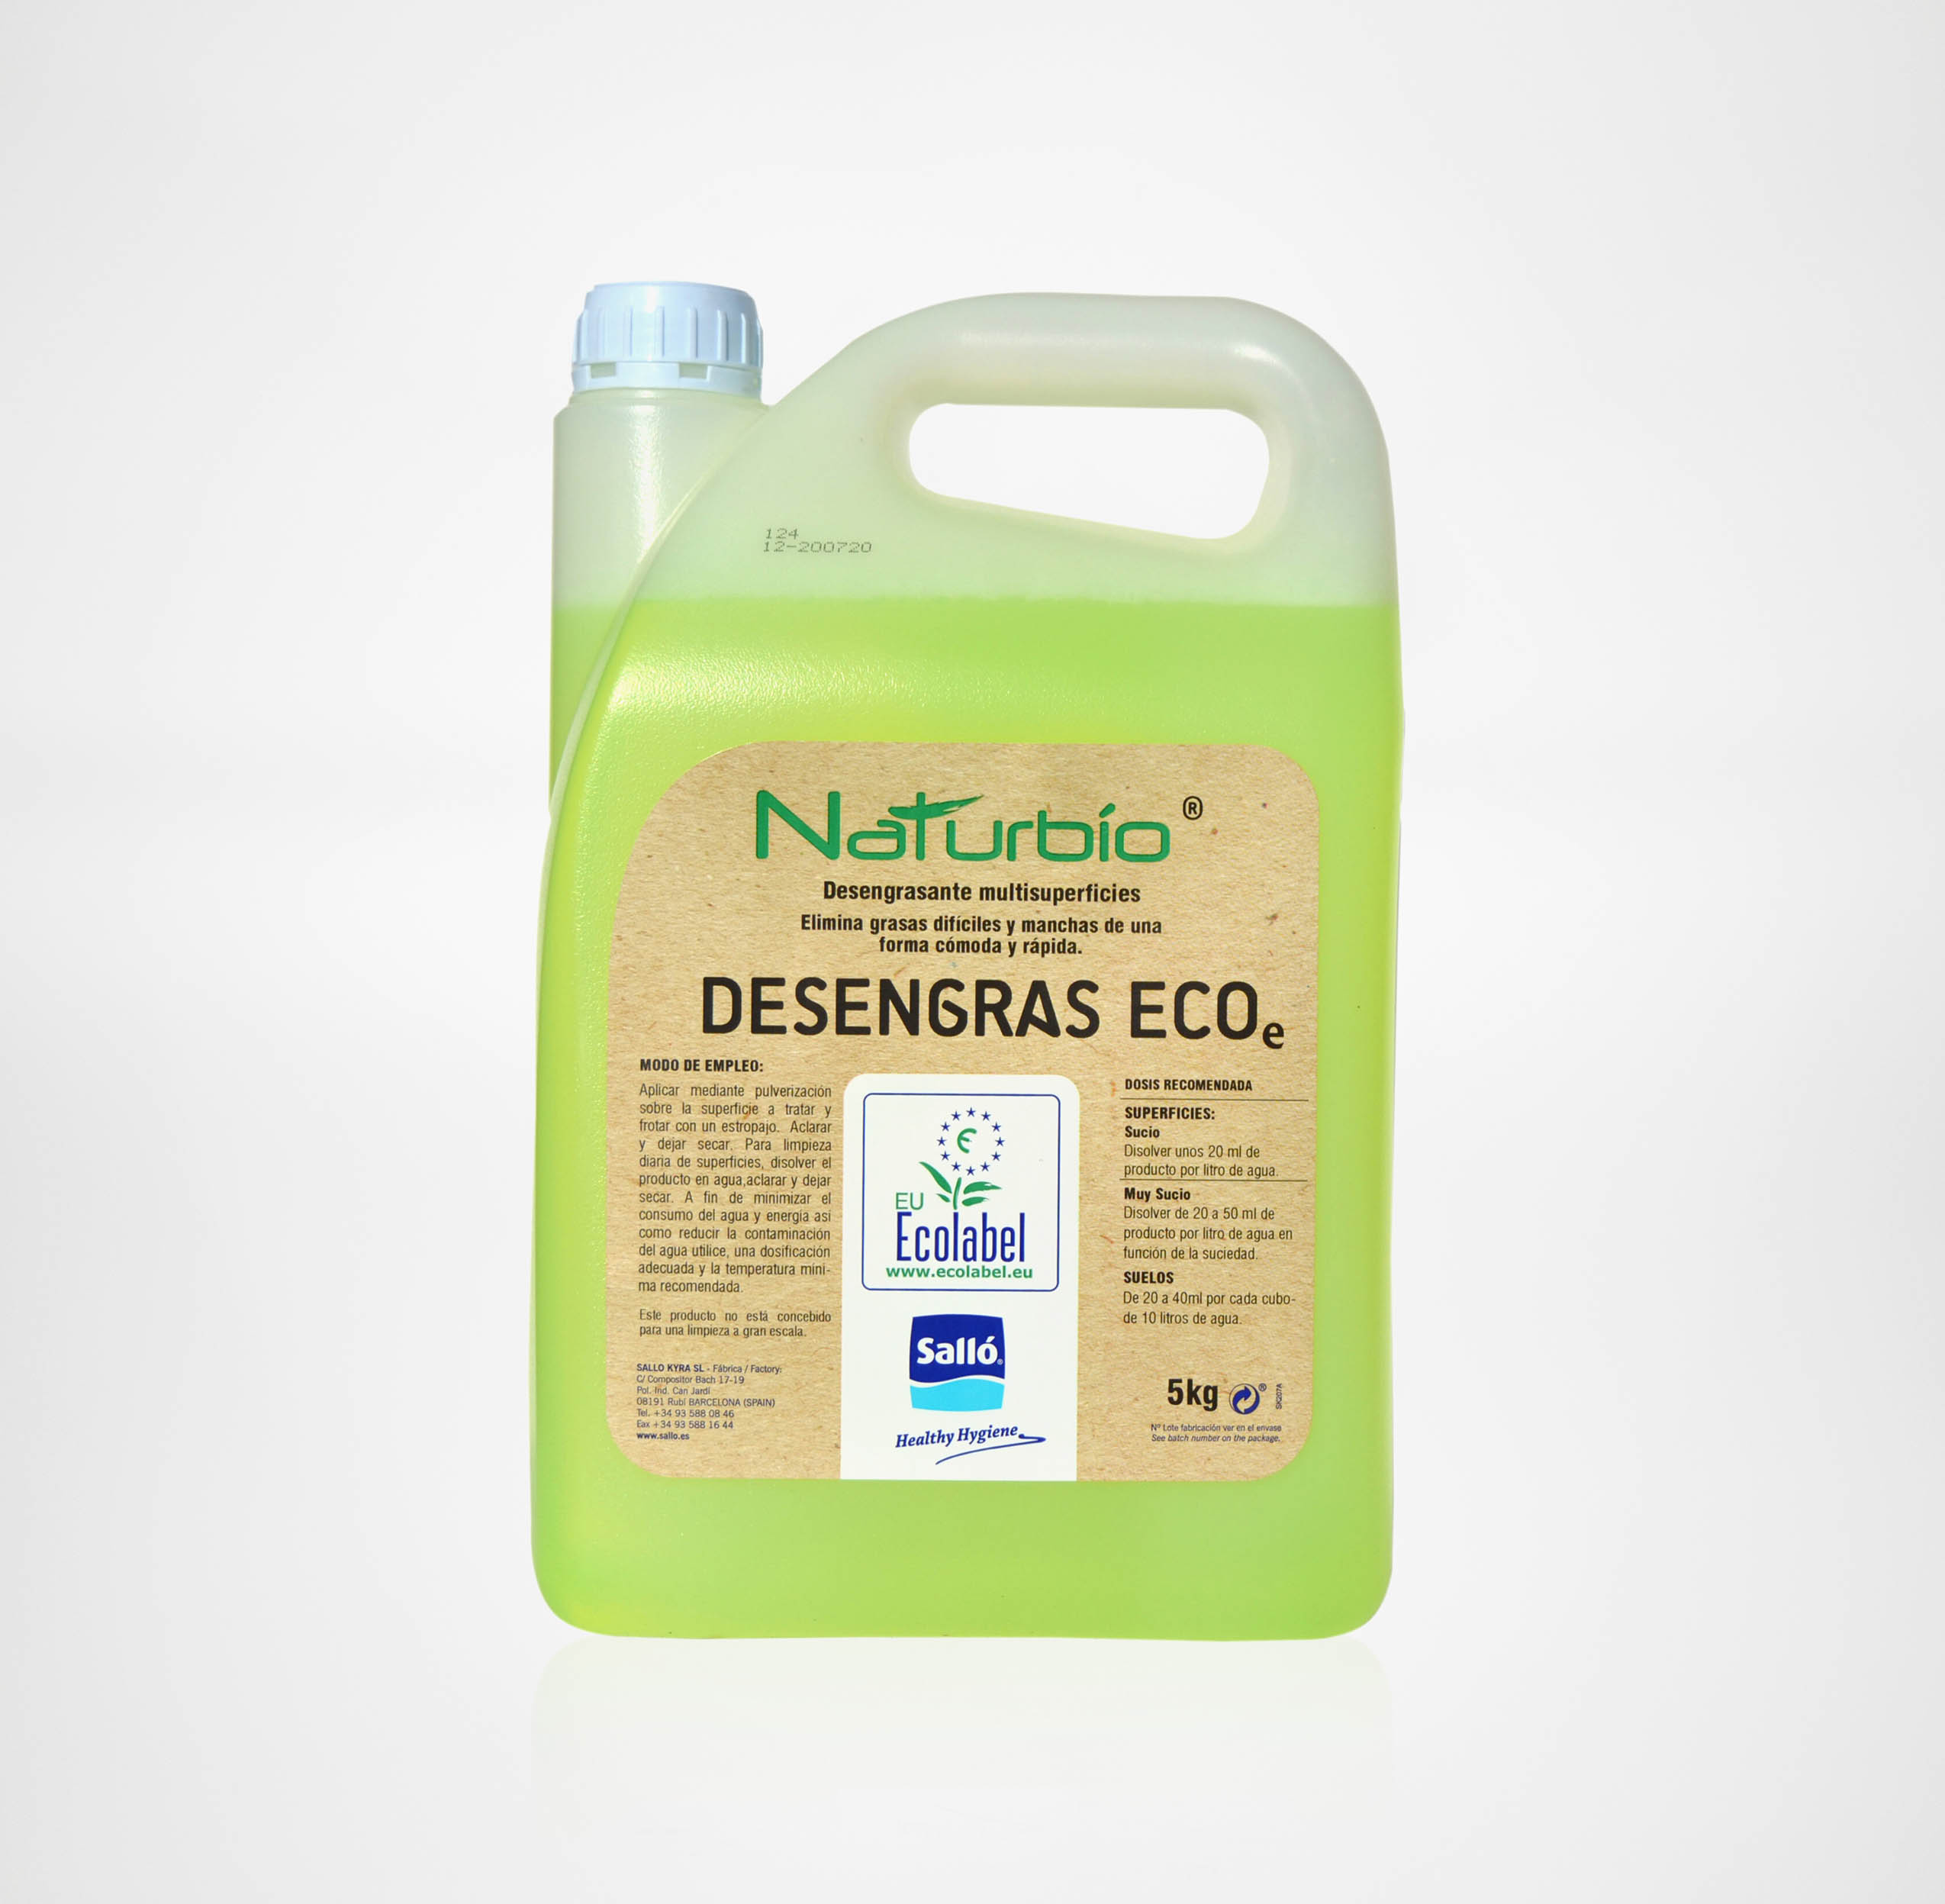 Desengrasante ecológico Desengras ECOe Naturbío® 1 L / 5 L – 6,60€ – DOSI®